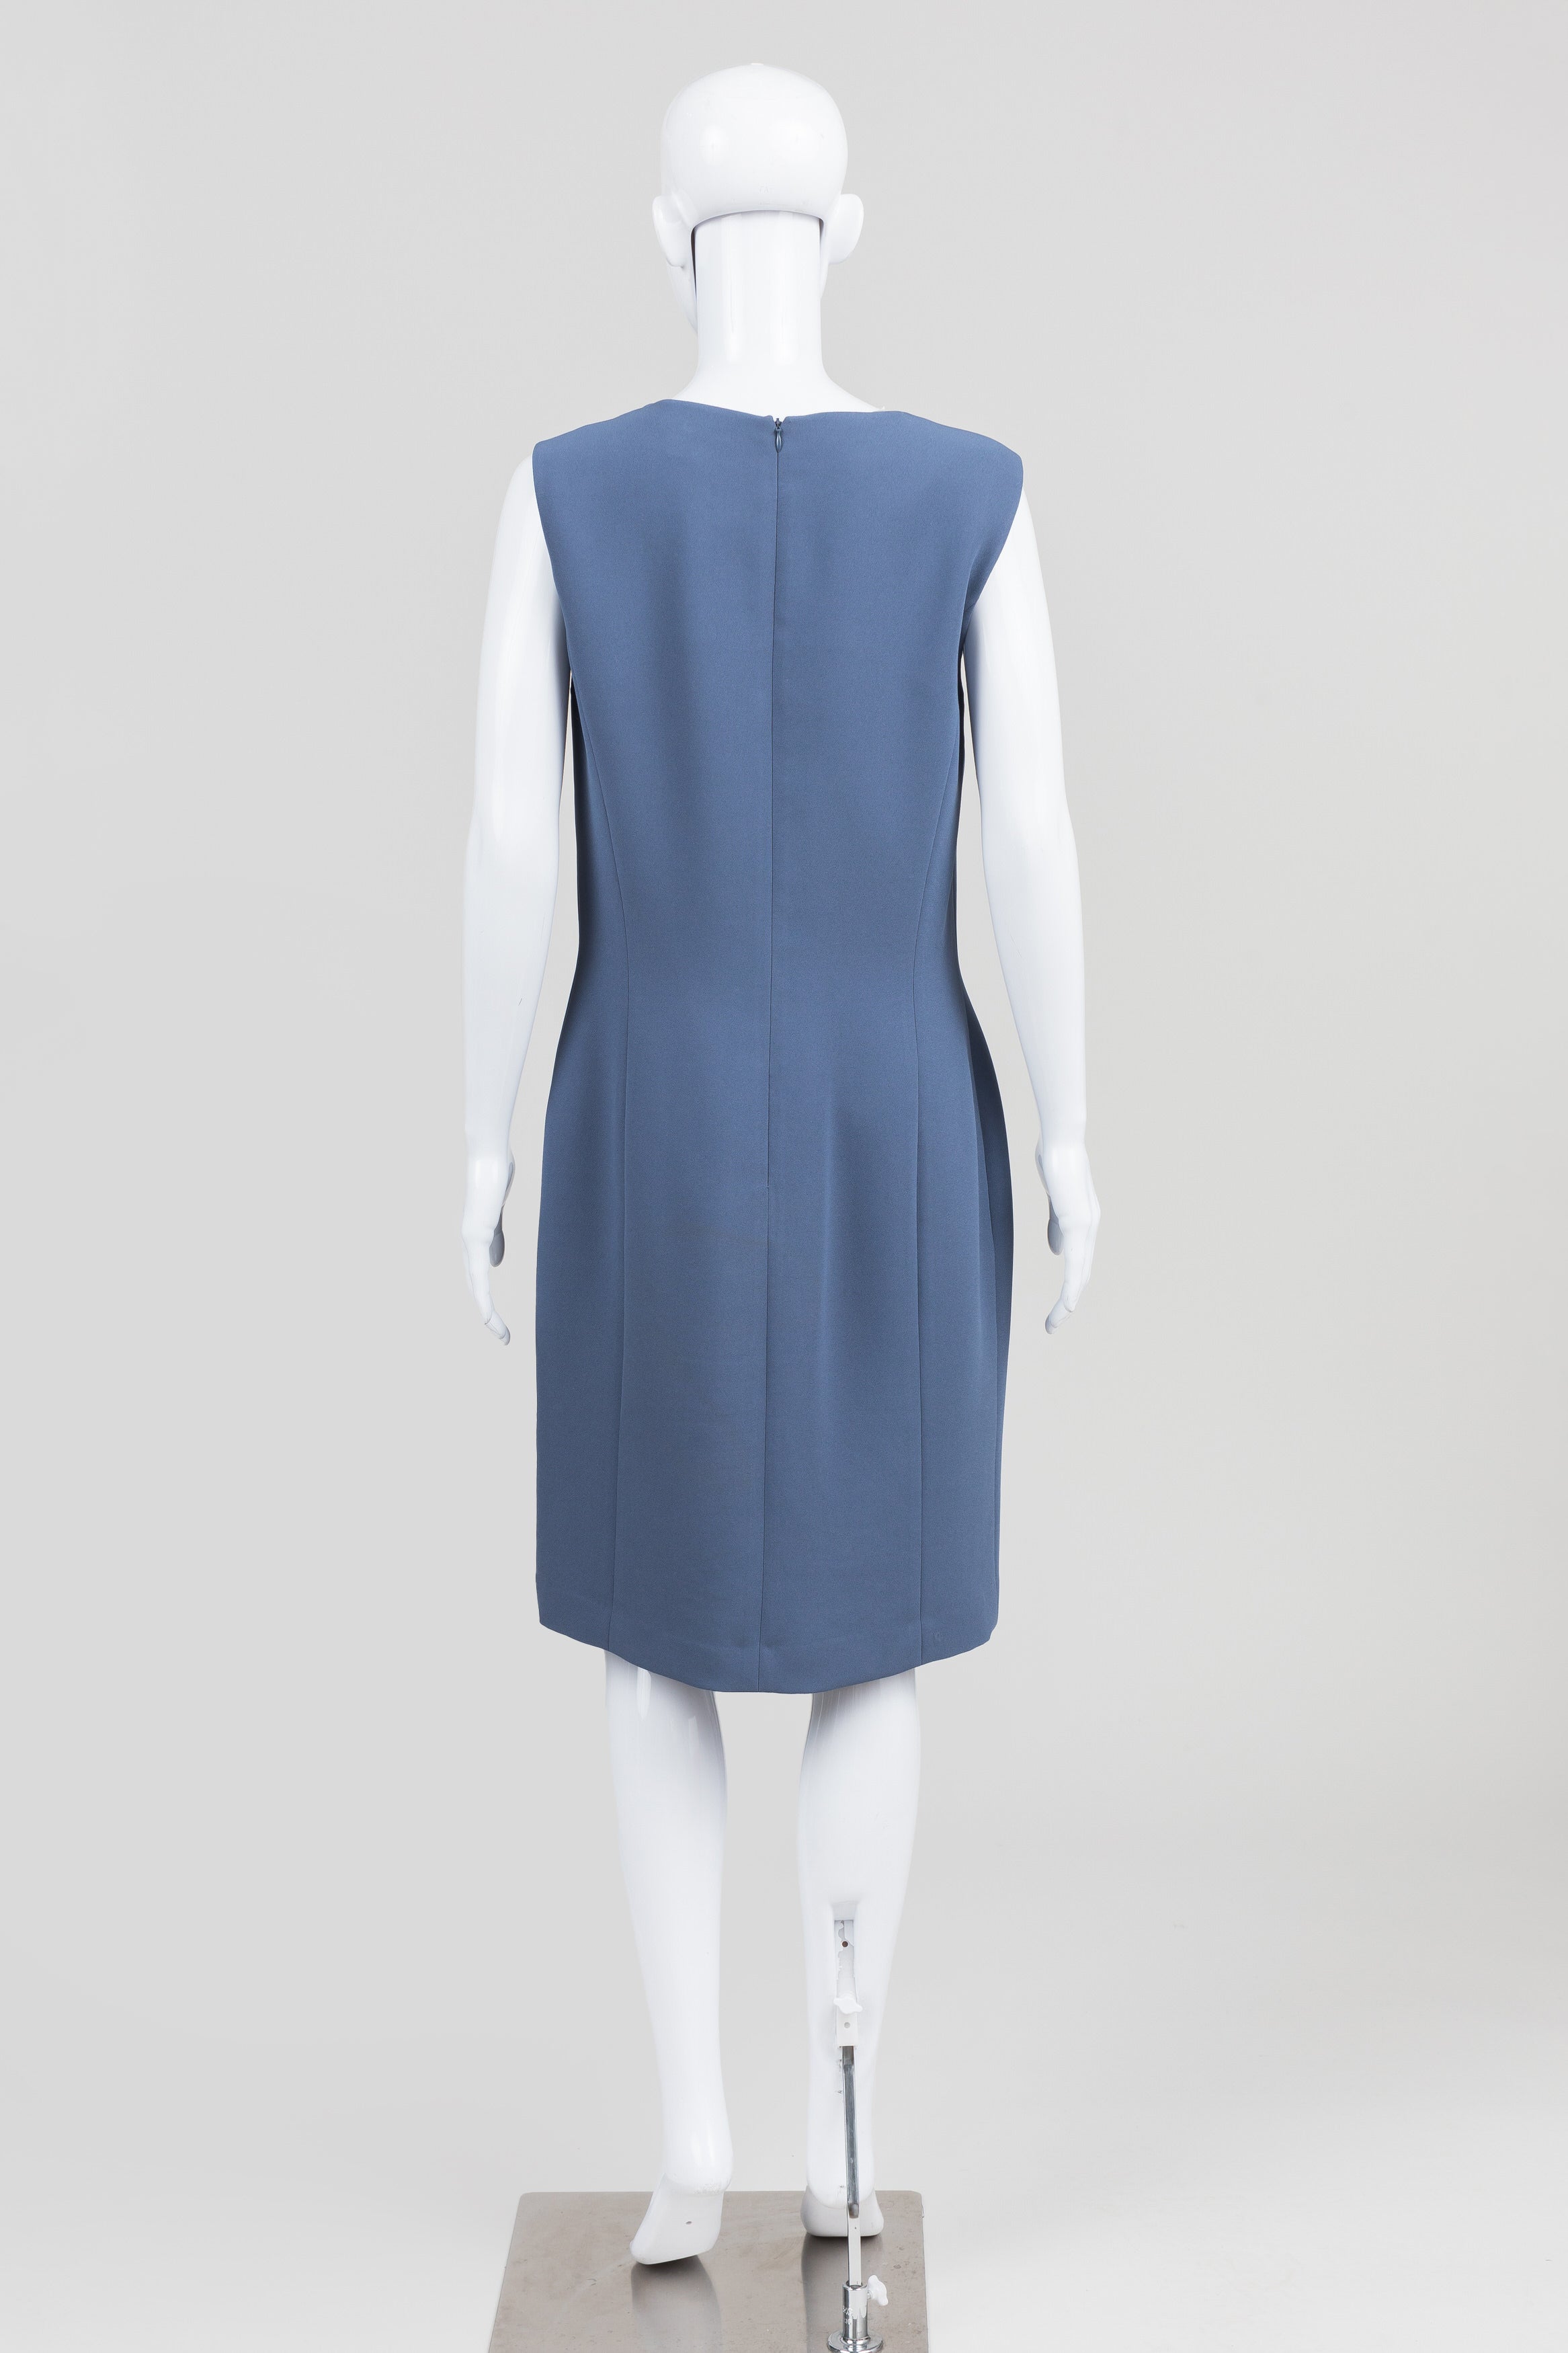 B. Bennett Slate Blue Dress & Coat Set (12)